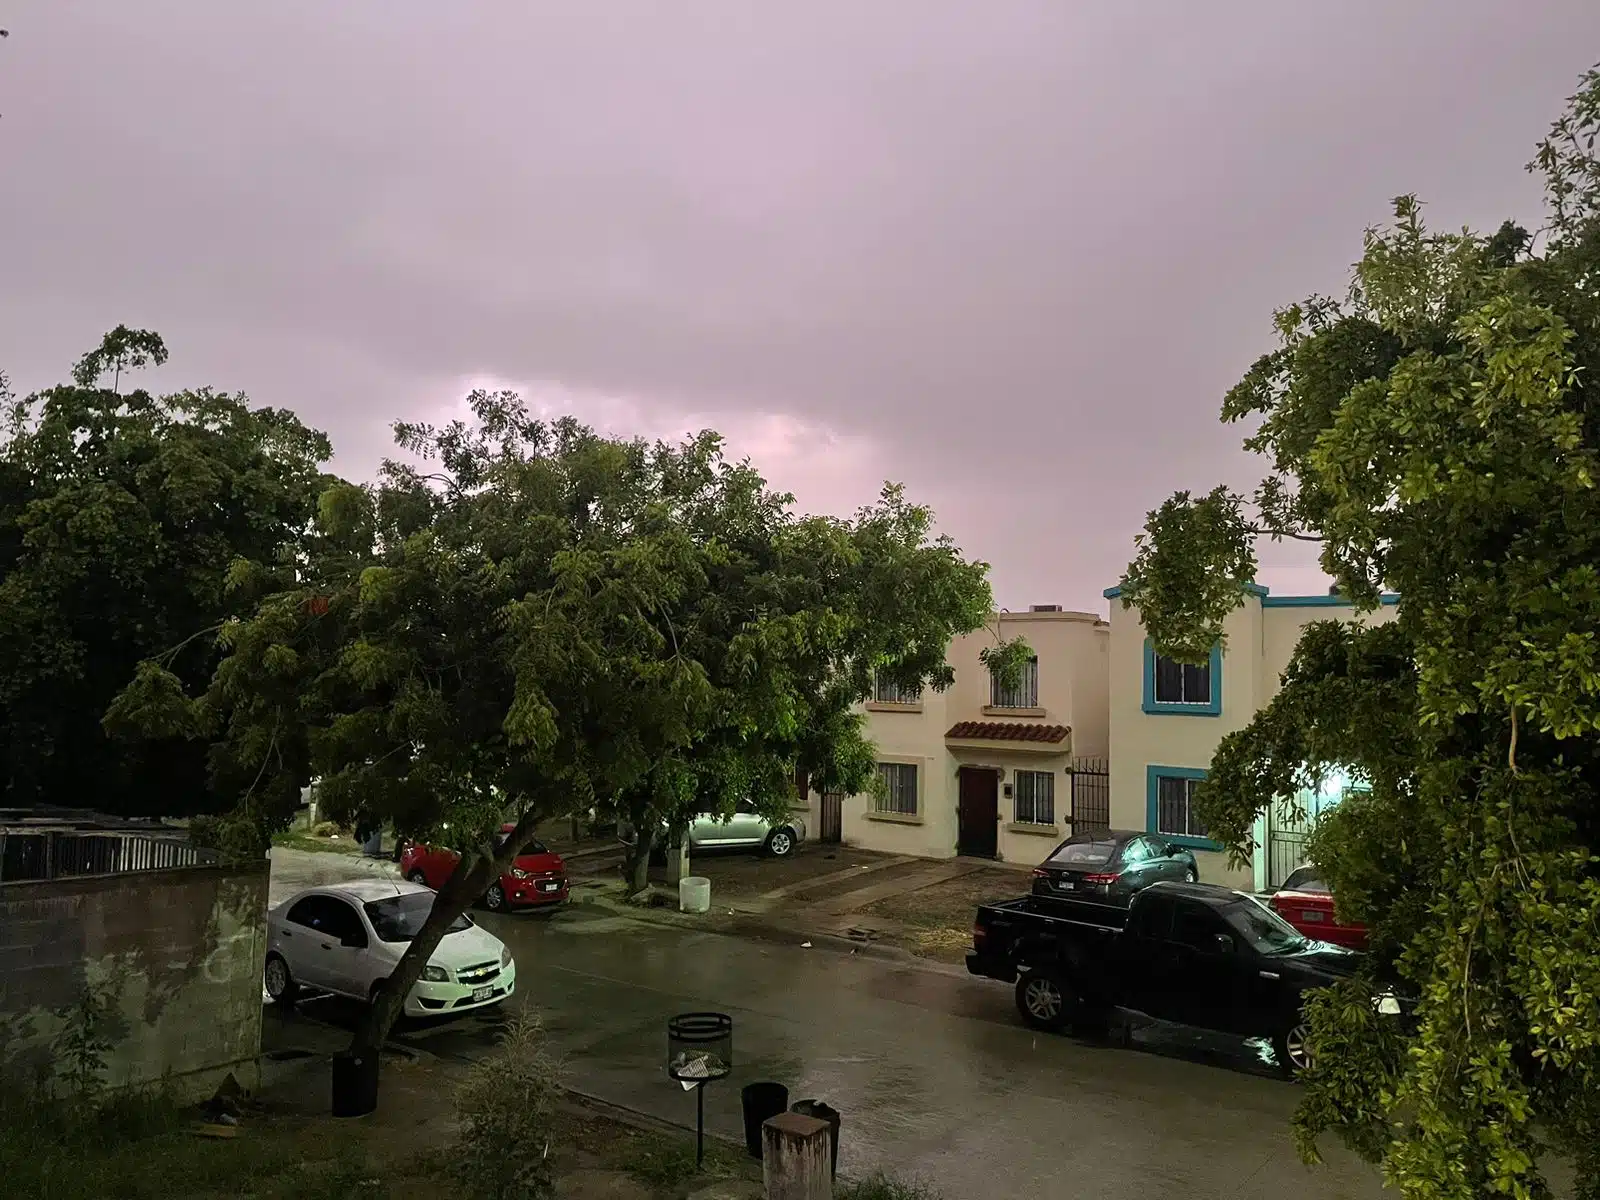 Lluvia ligera, árboles, casas y carros